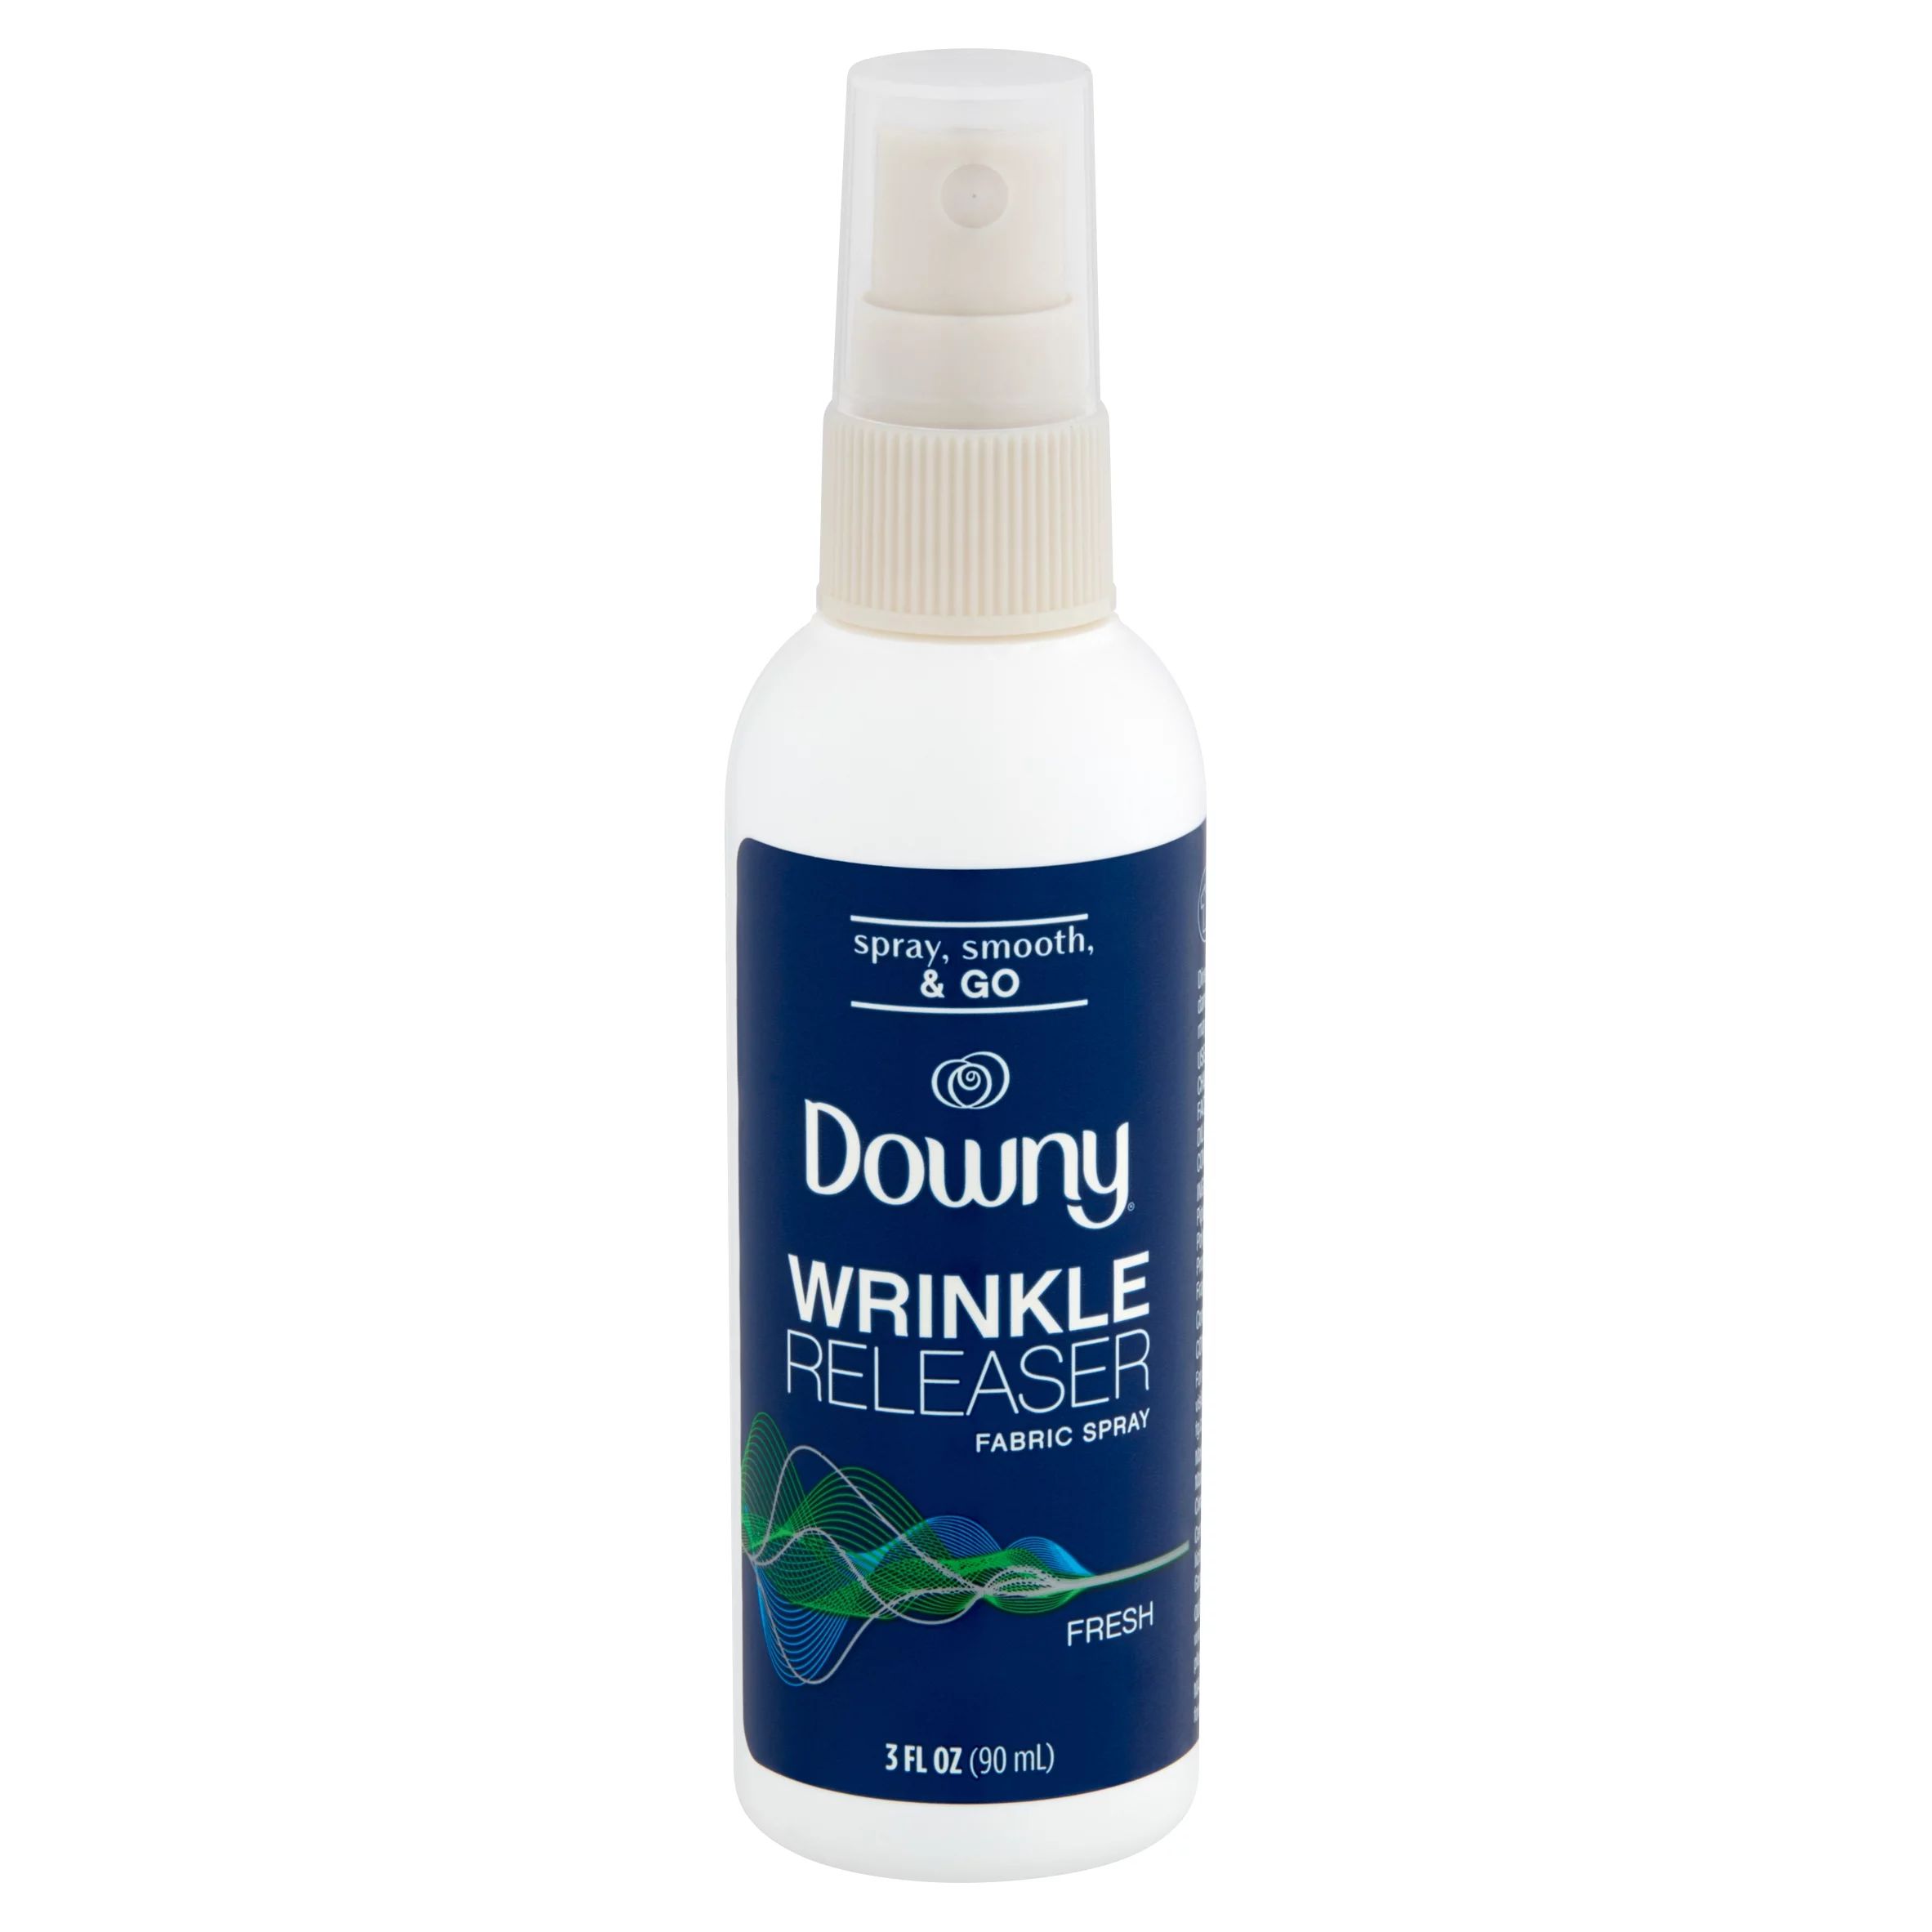 Downy Fresh Wrinkle Releaser Fabric Spray, 3 fl oz - Walmart.com | Walmart (US)